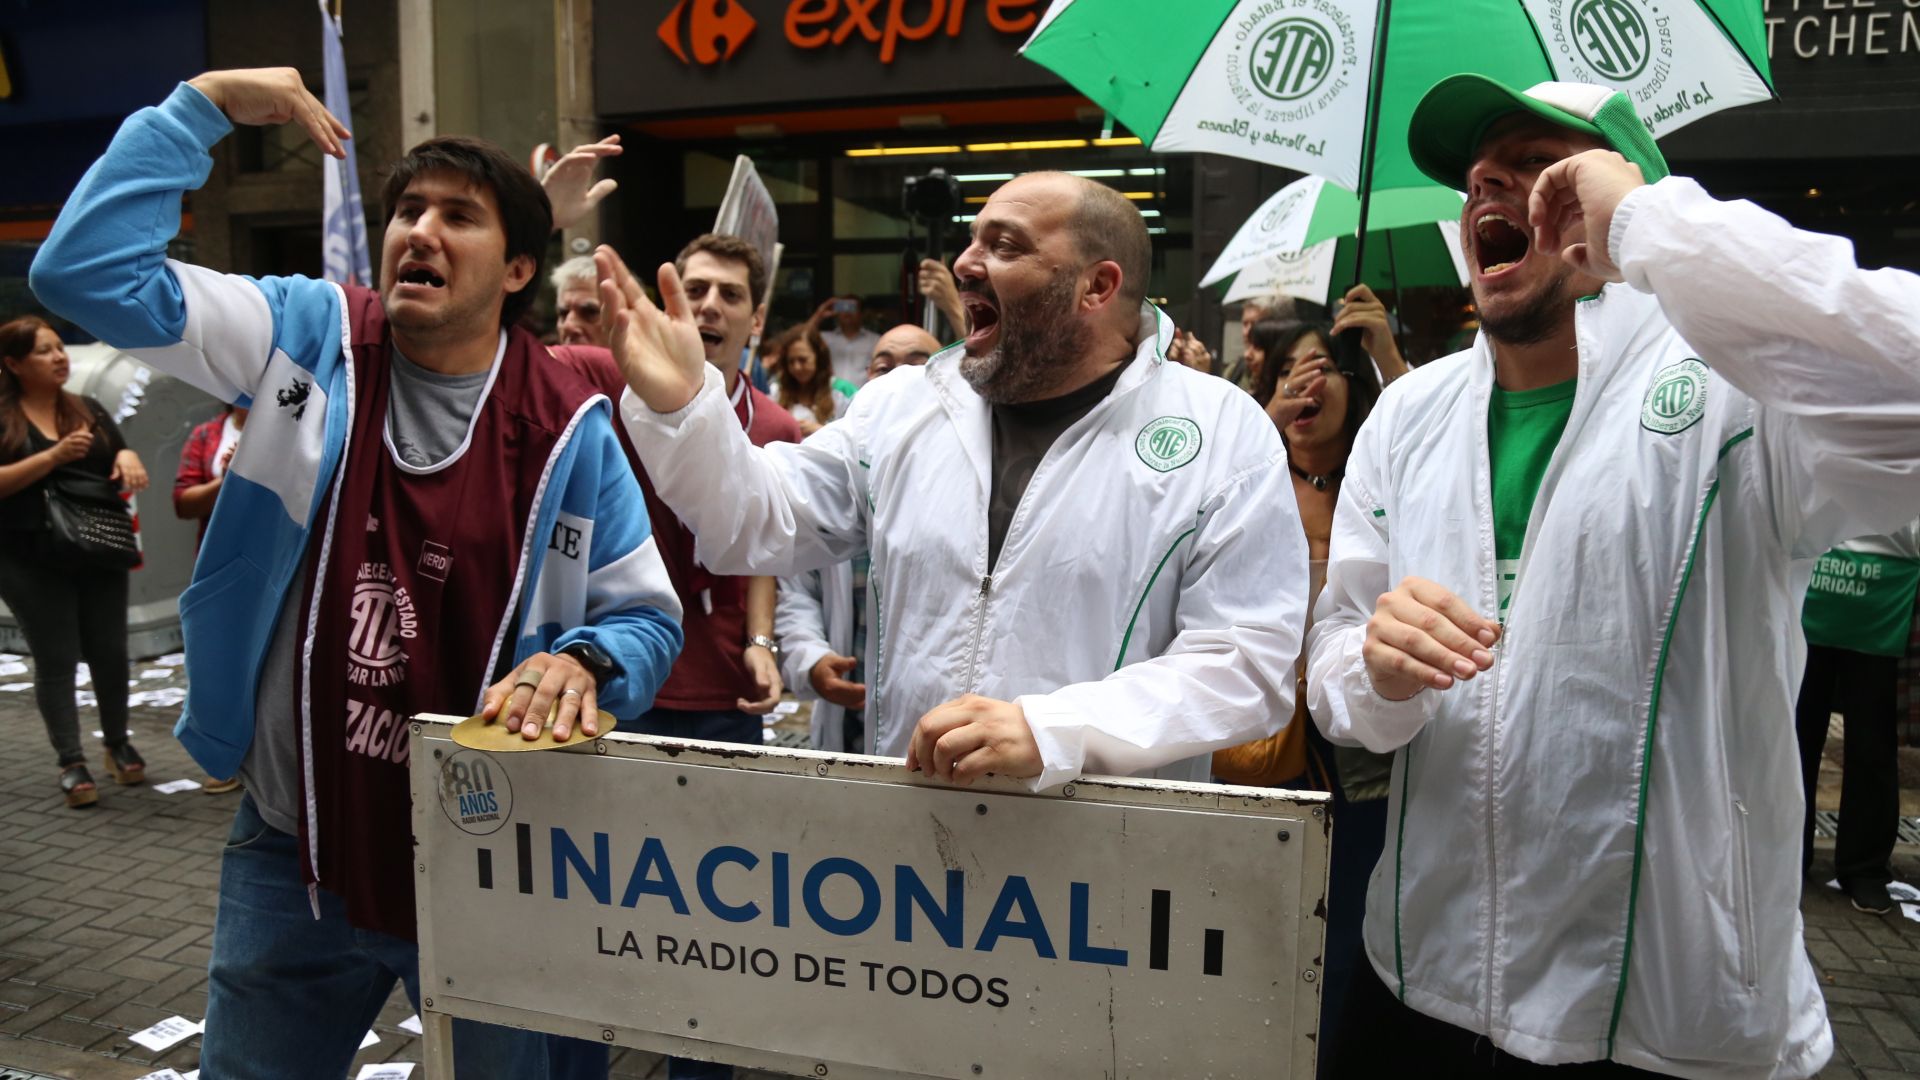 Radio Nacional reclamó por aumento salarial y denunció vaciamiento del Organismo